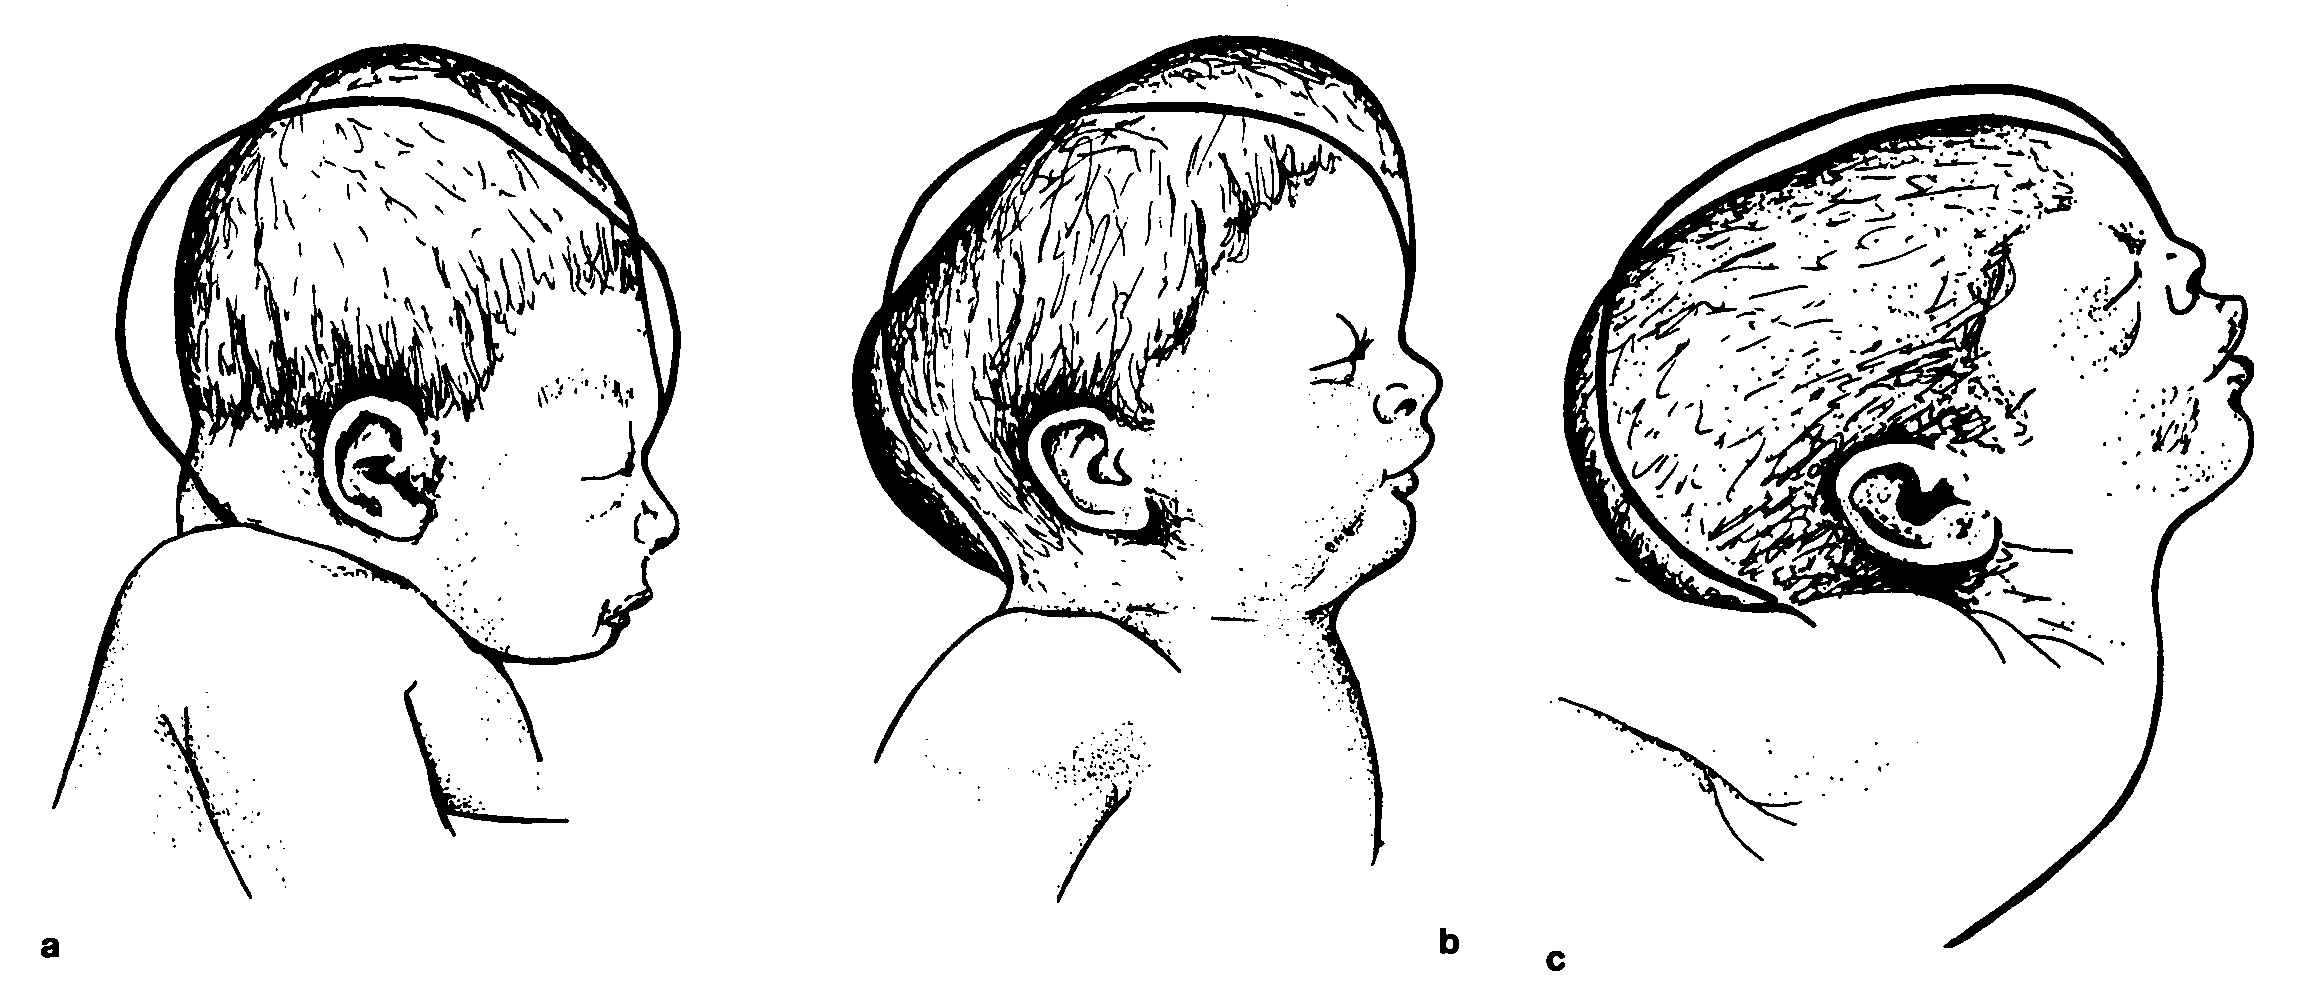 Поражение черепного. Брахицефалическая форма головы новорожденного. Долихоцефалическая форма головы новорожденного. Родовая травма кефалогематома. Родовая травма головы кефалогематома.